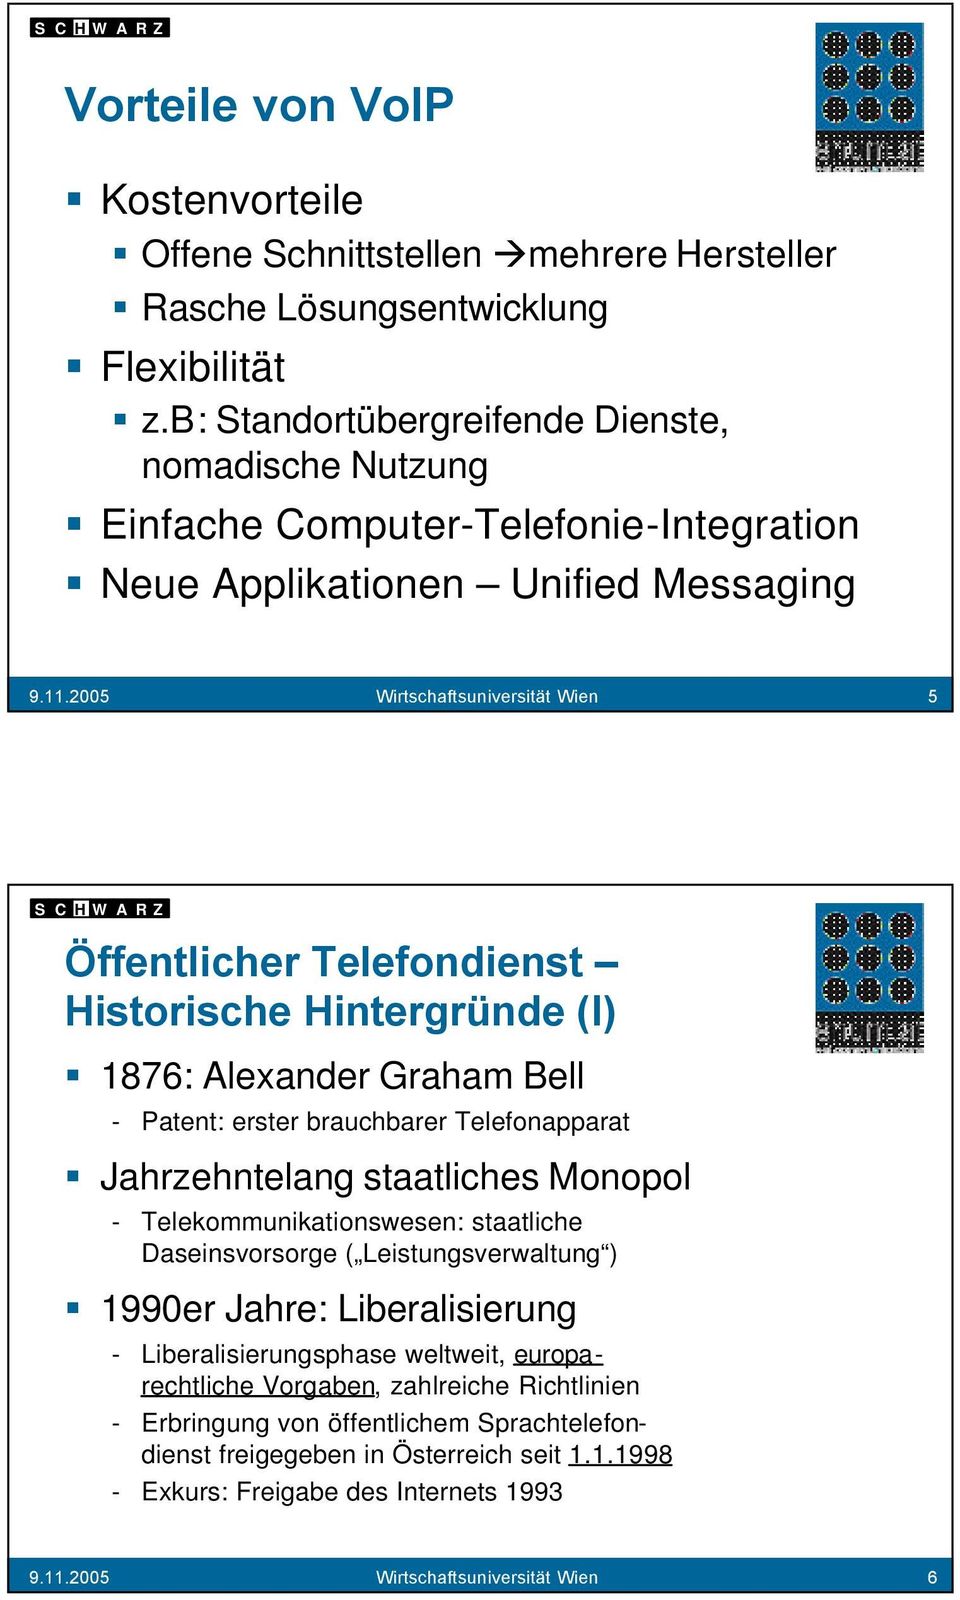 2005 Wirtschaftsuniversität Wien 5 Historische Hintergründe (I) 1876: Alexander Graham Bell - Patent: erster brauchbarer Telefonapparat Jahrzehntelang staatliches Monopol -